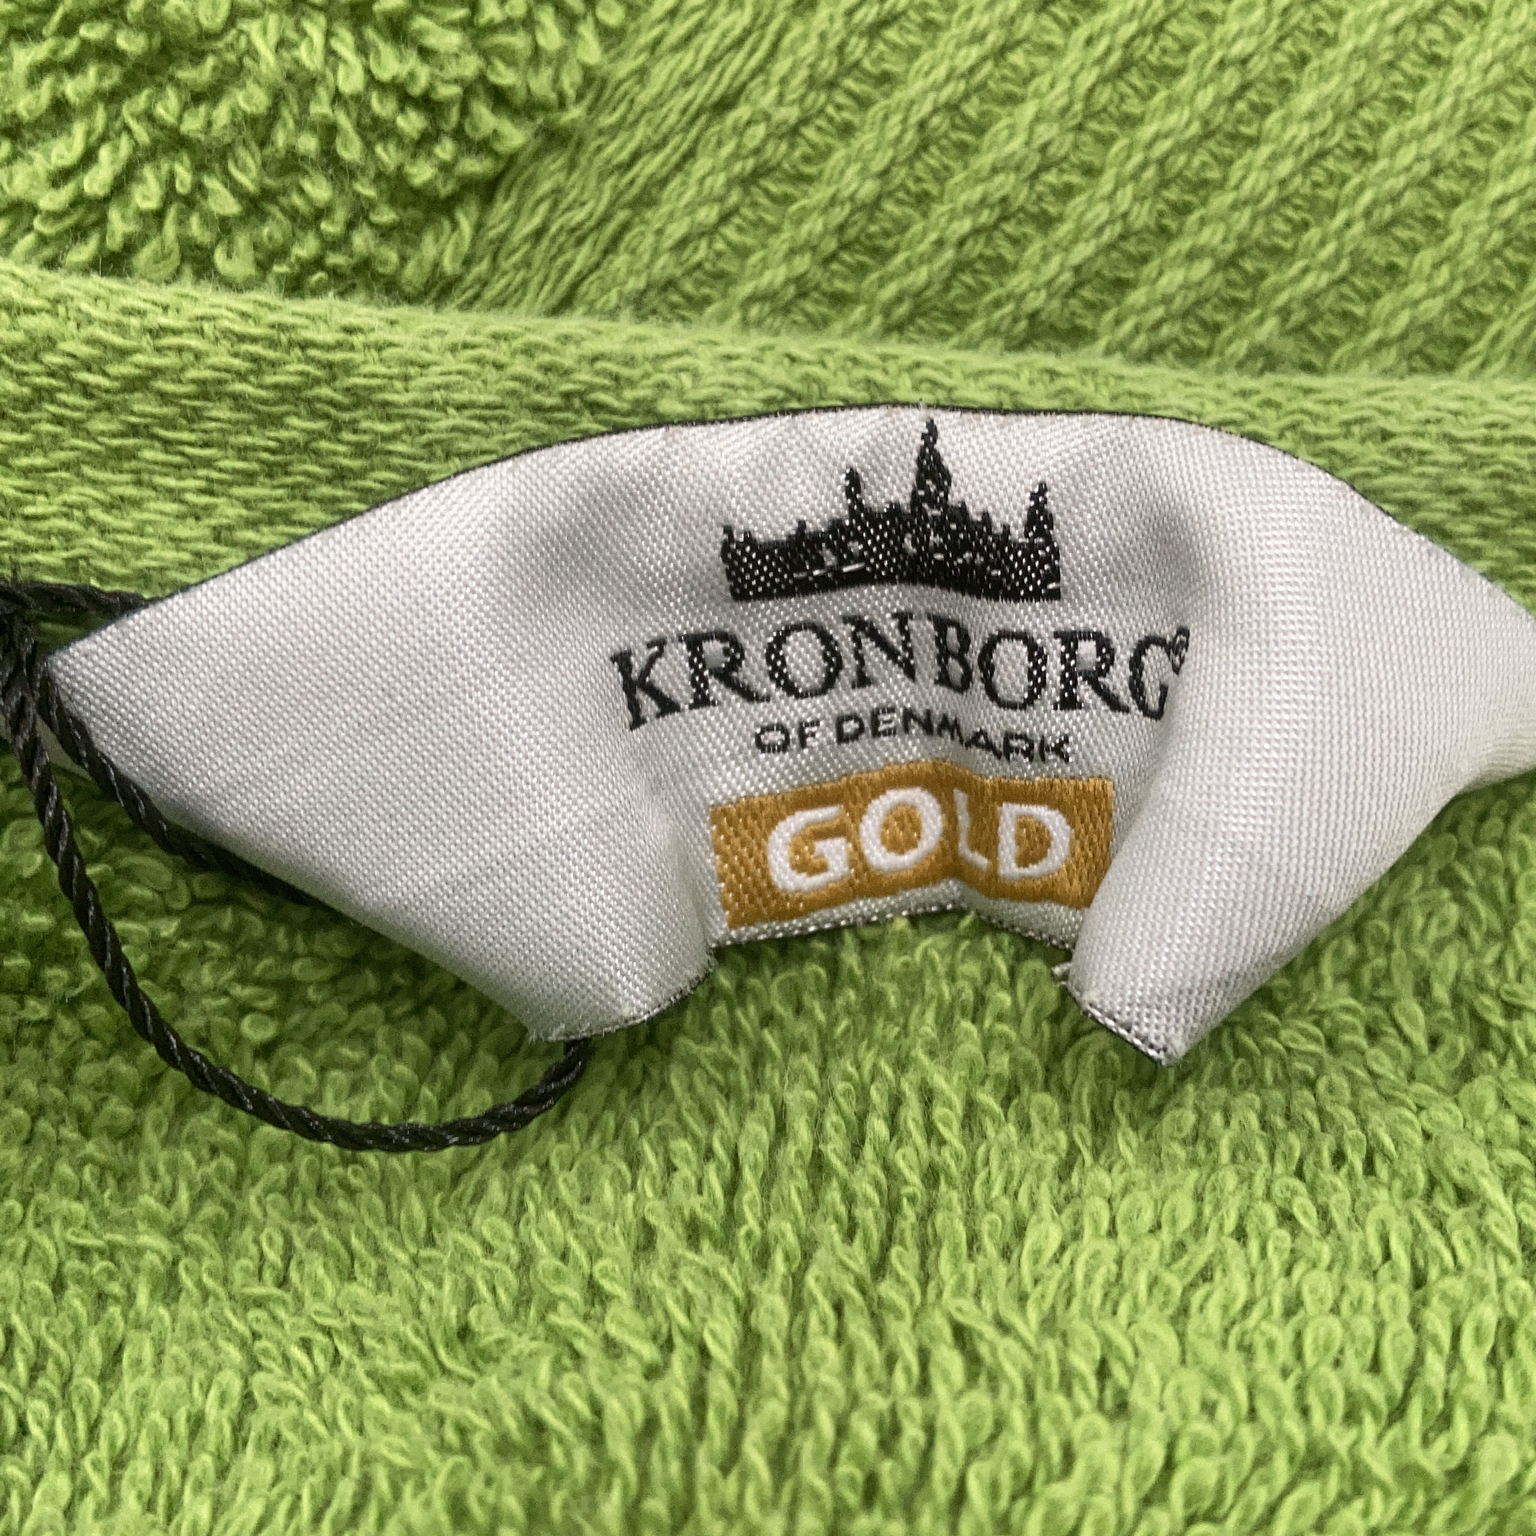 Kronborg of Denmark